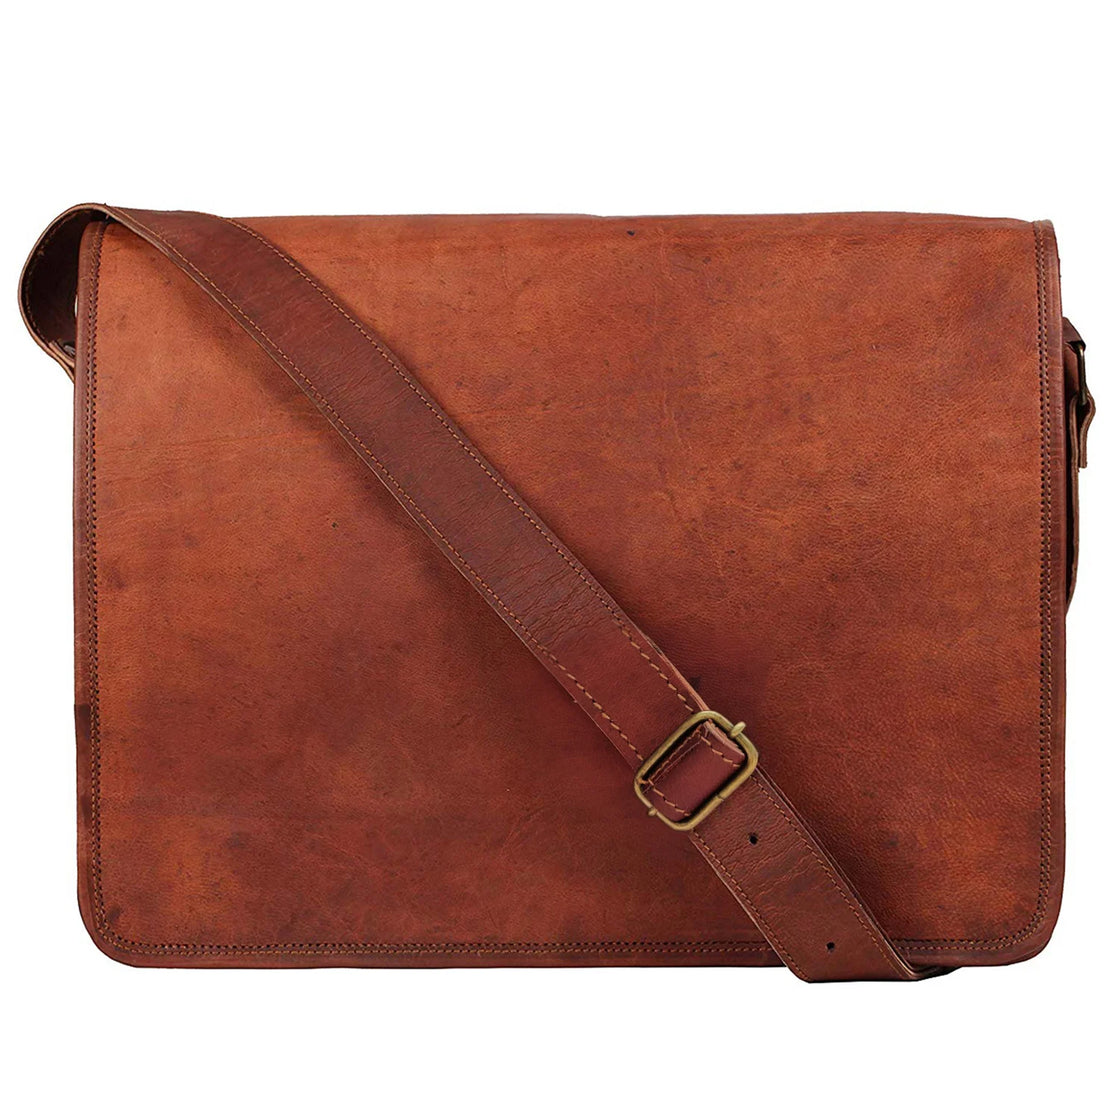 Leather Messenger Bag